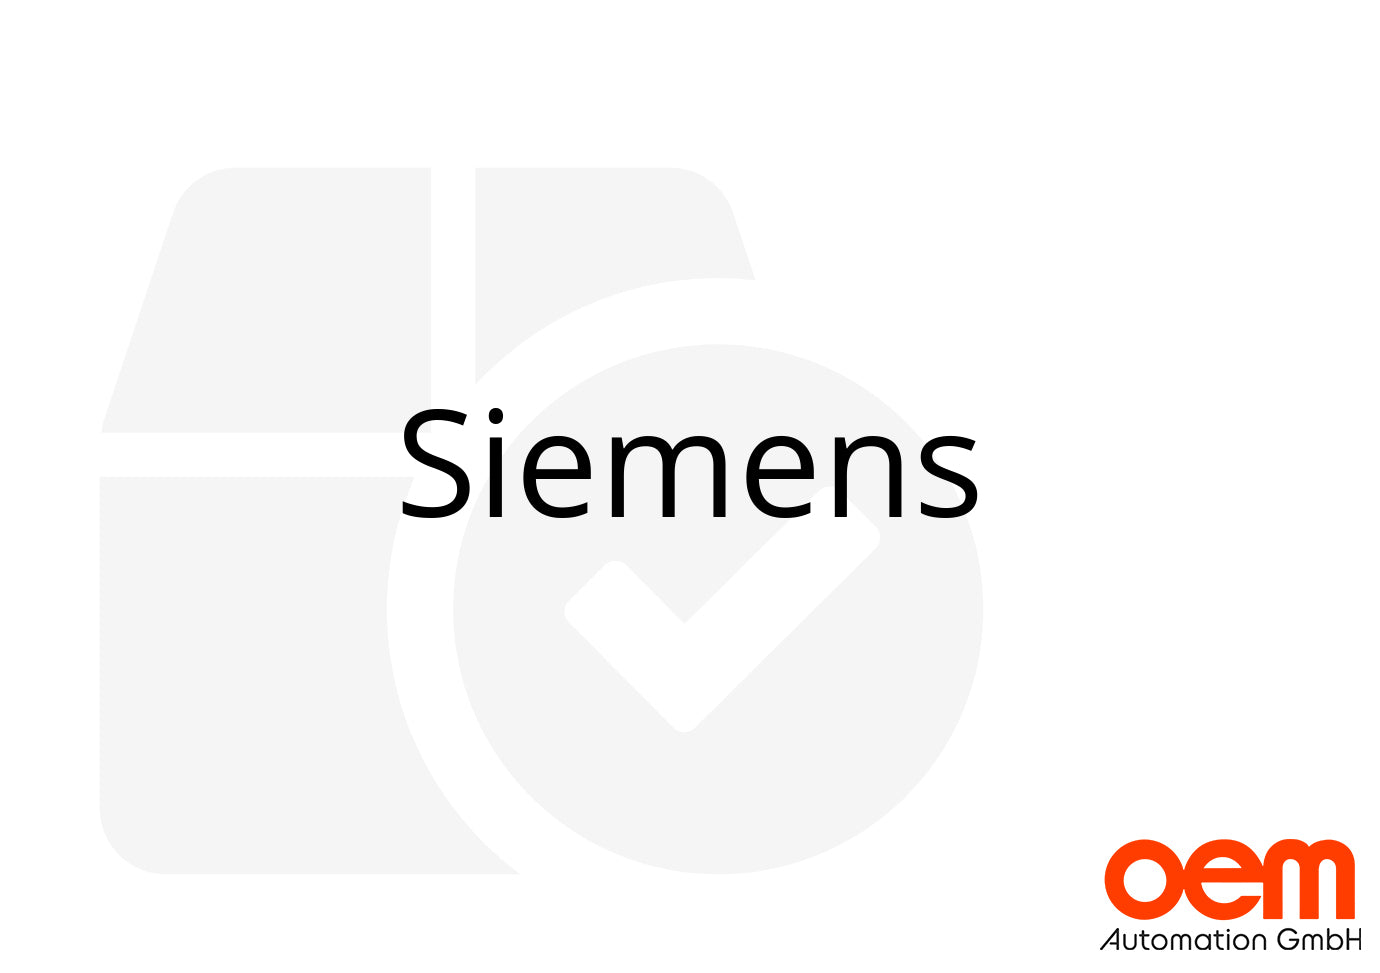 Siemens 6SL3055-0AA00-5BA3